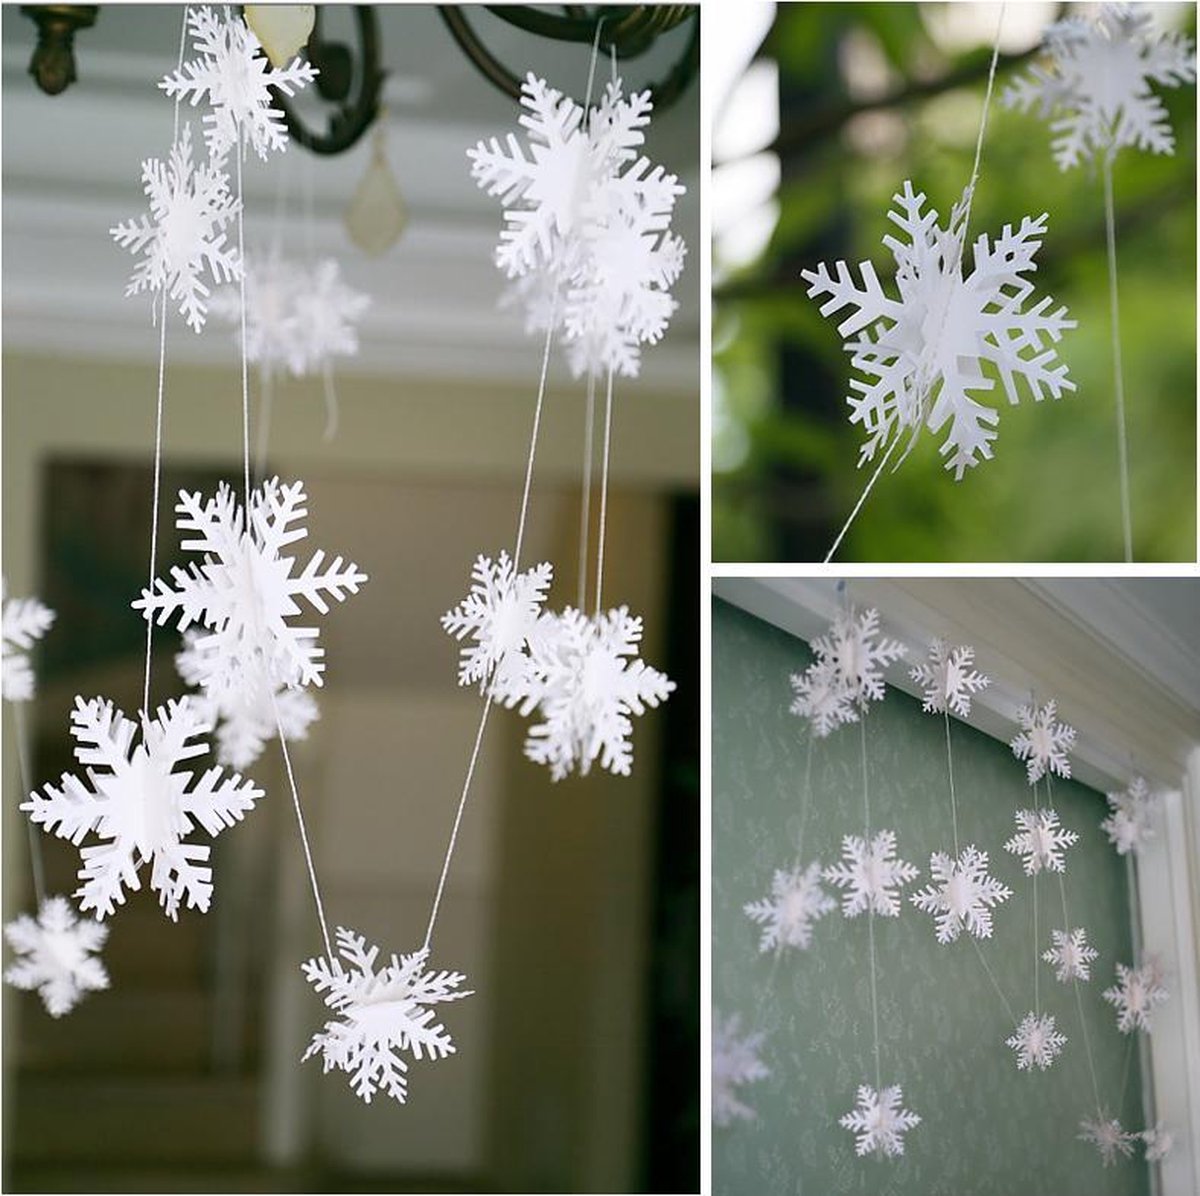 3D Sneeuwvlokken slinger 3 meter met 12 sneeuwvlokken in 3 formaten | Kerstslinger | Sneeuwdecoratie | Winter | Kerstversiering | Gratis verzonden